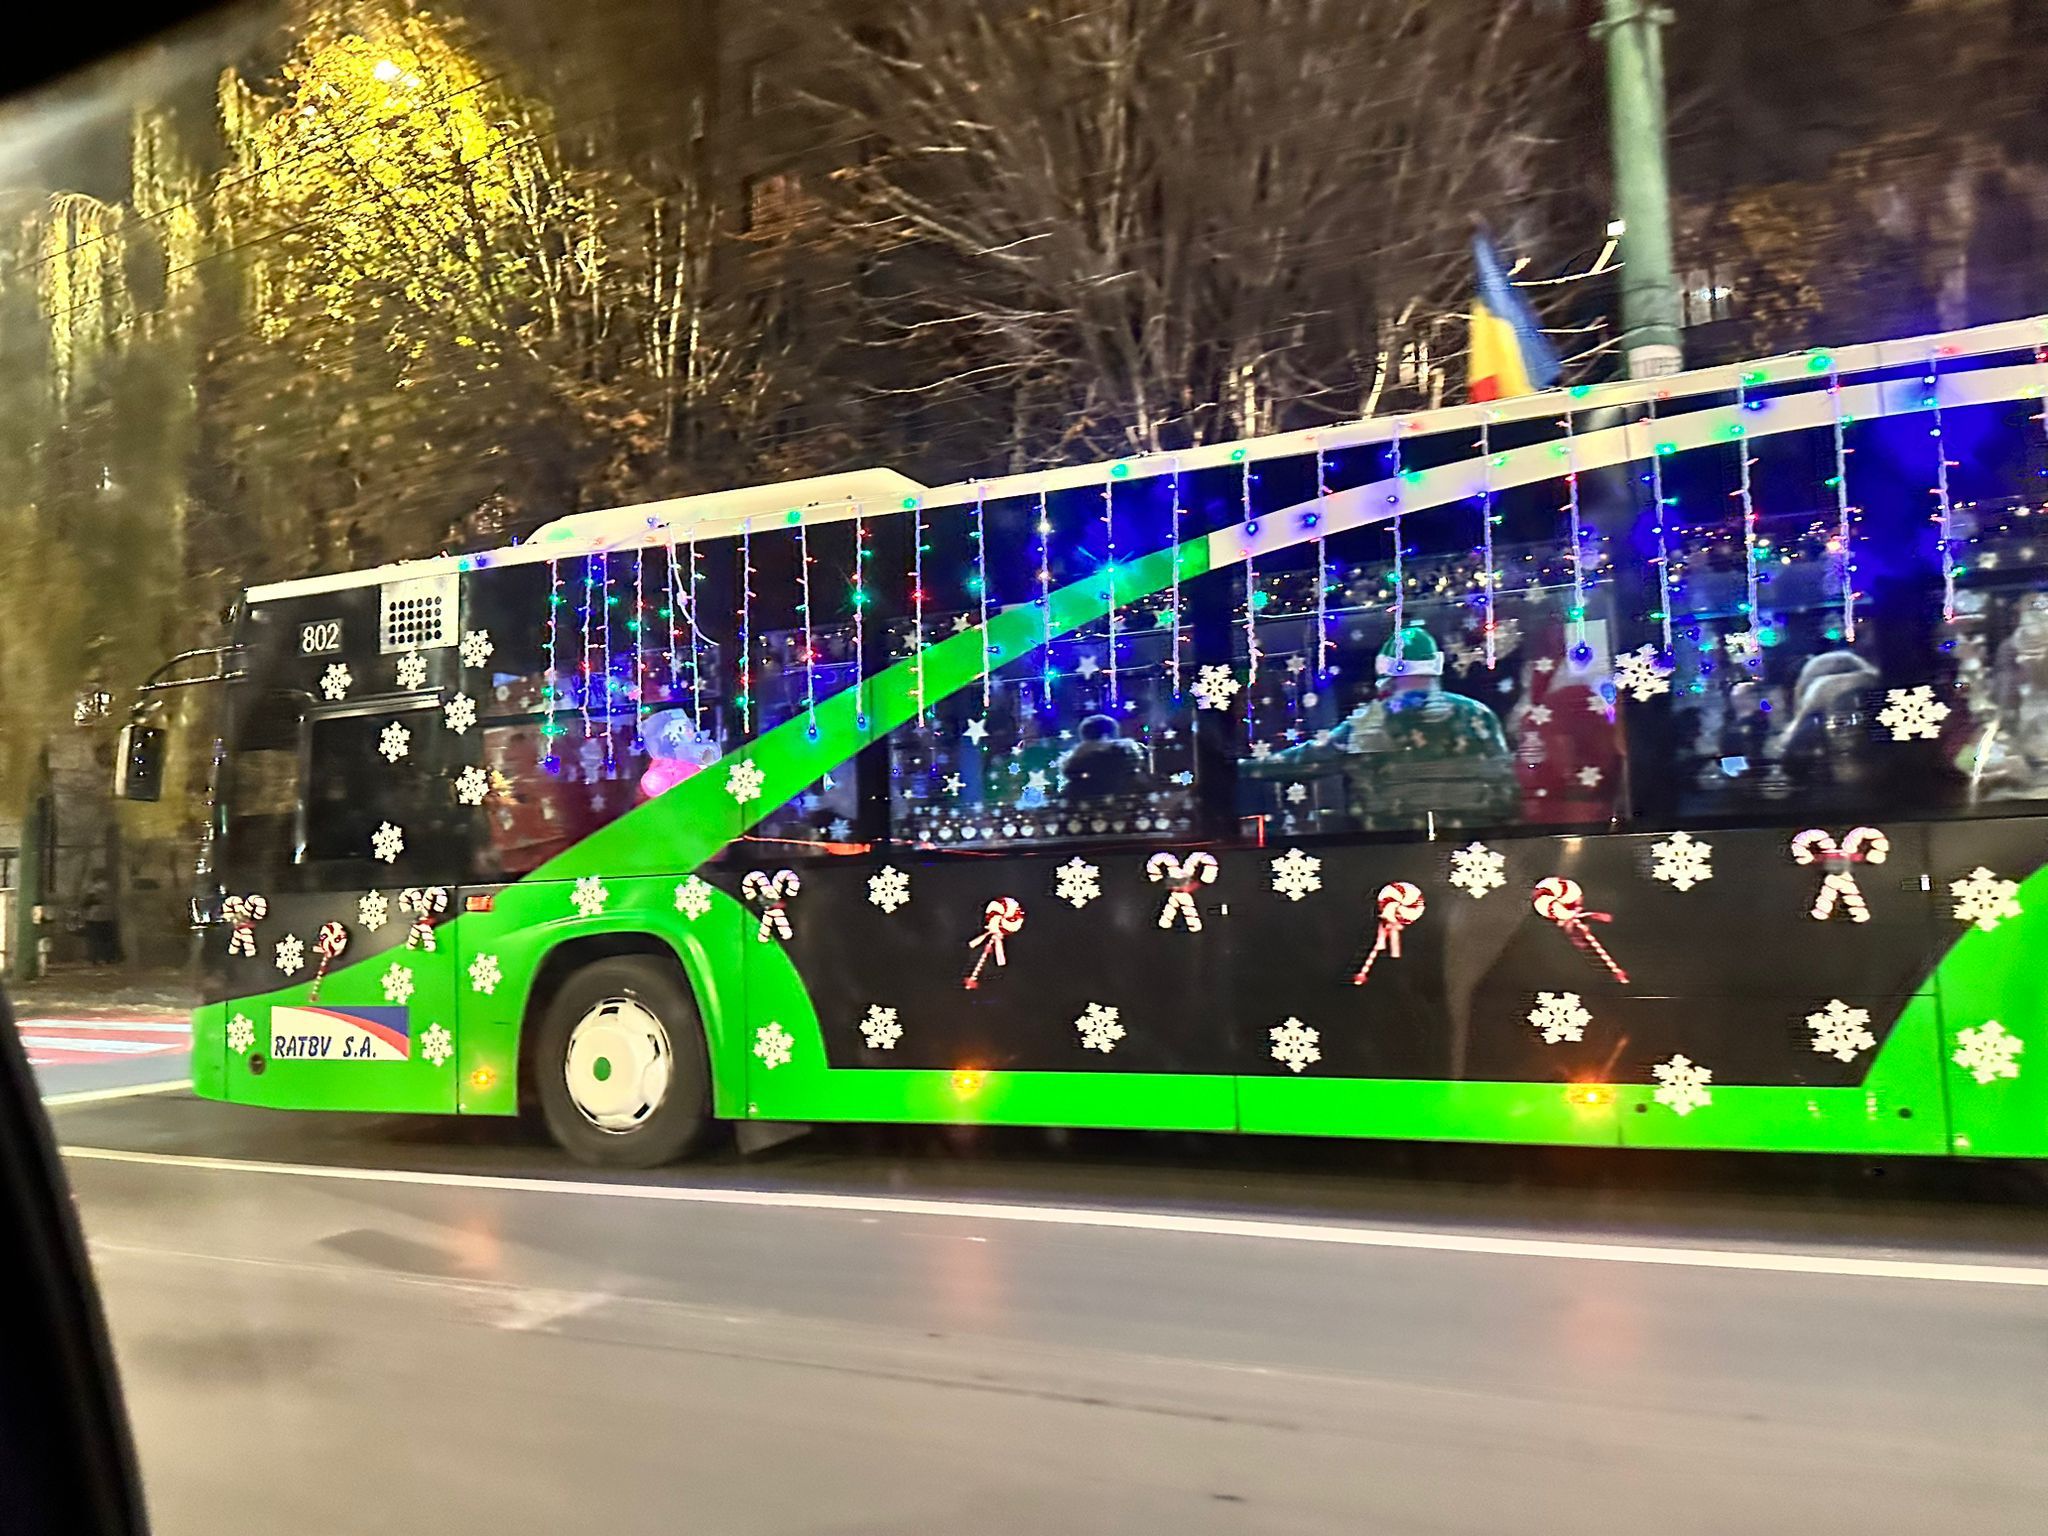 FOTO: RATBV a lansat autobuzul lui Moș Crăciun care va străbate întregul oraș, iar copiii vor putea circula gratuit. Vezi aici traseul și ora de plecare